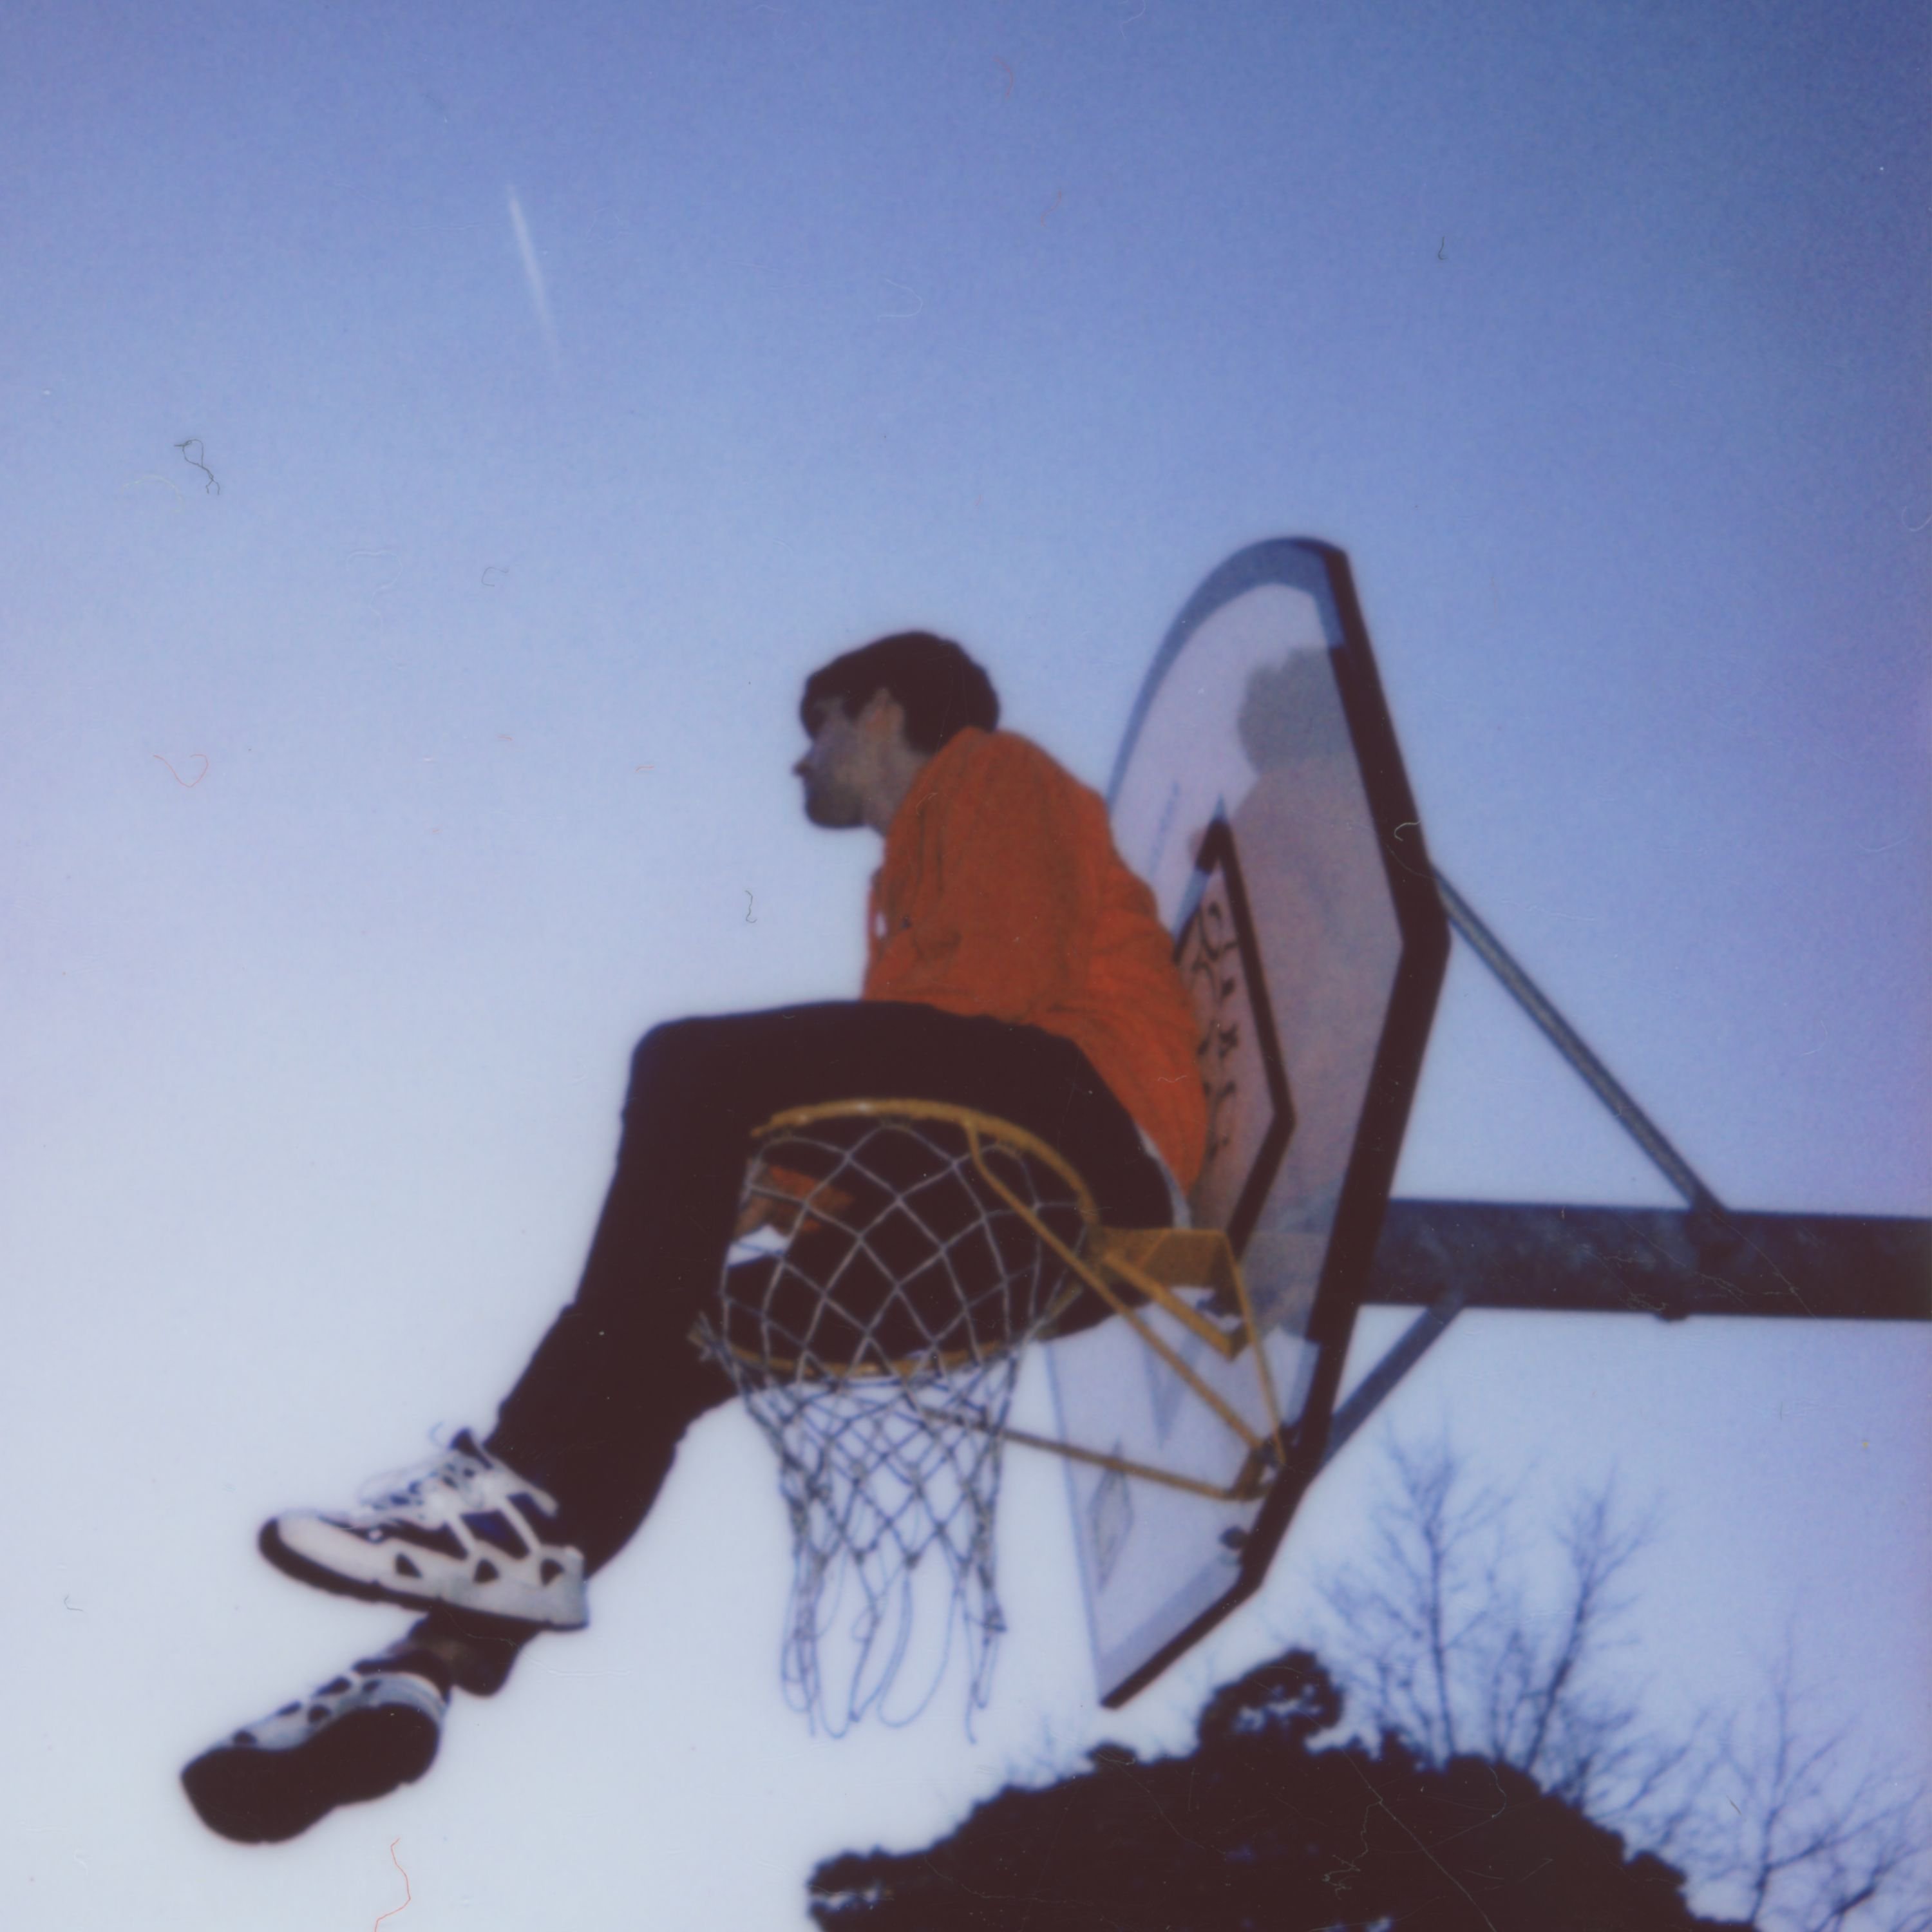 Der Künster Hauskey sitzt auf einem Basketballkorb. Man sieht ihn von unten, der Himmel ist dunkelblau wie kurz nach dem Sonnenuntergang.